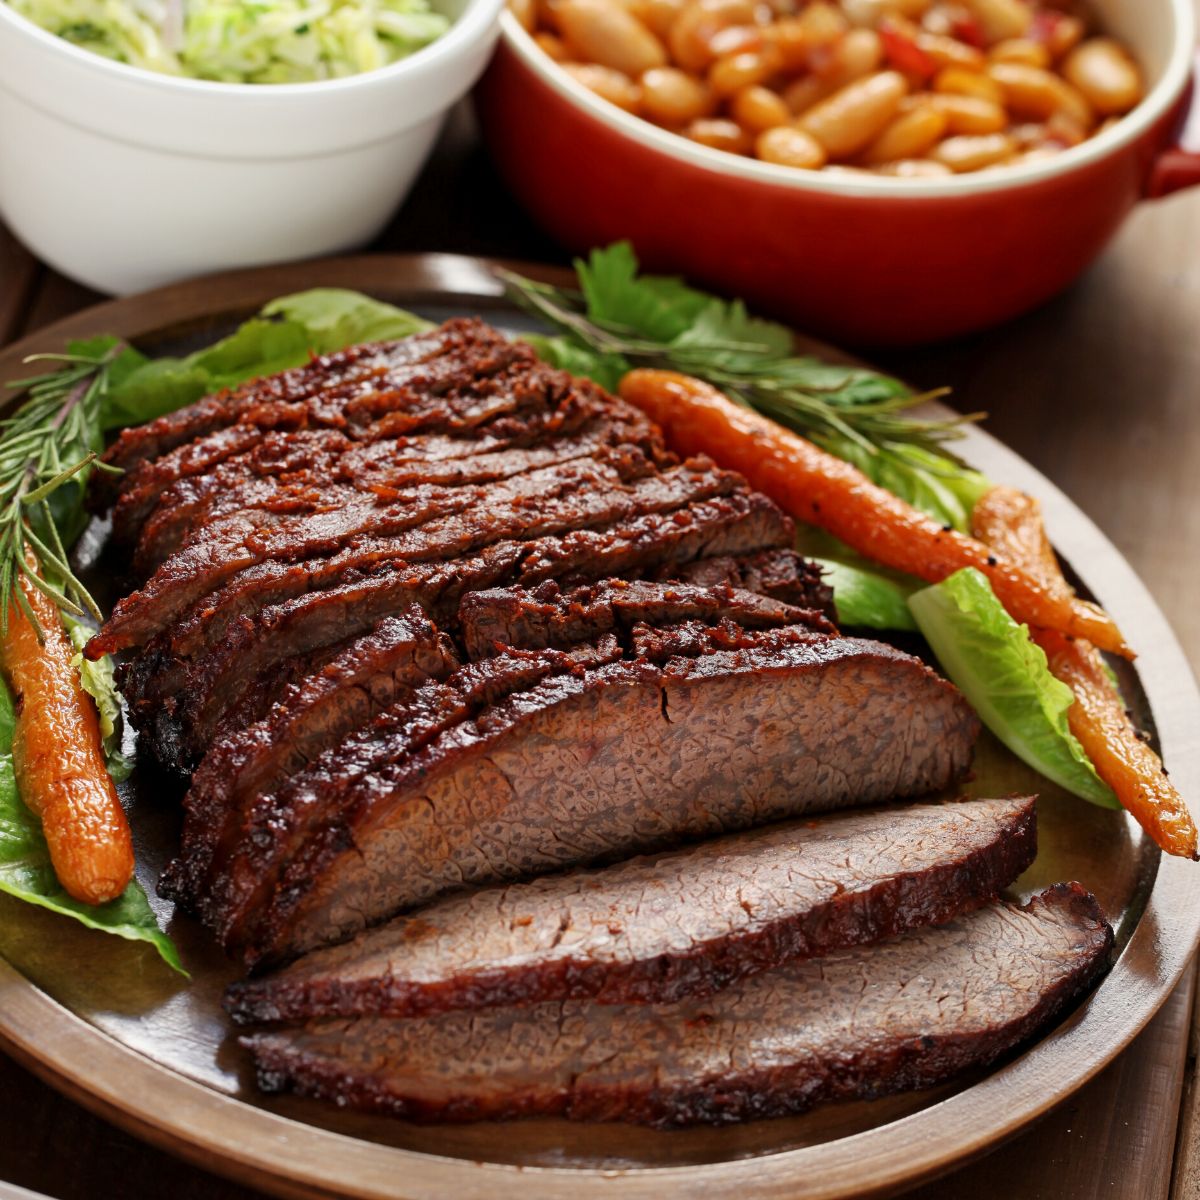 Beef Brisket mit Karotten, Bohnen und Krautbeilage im Hintergrund.